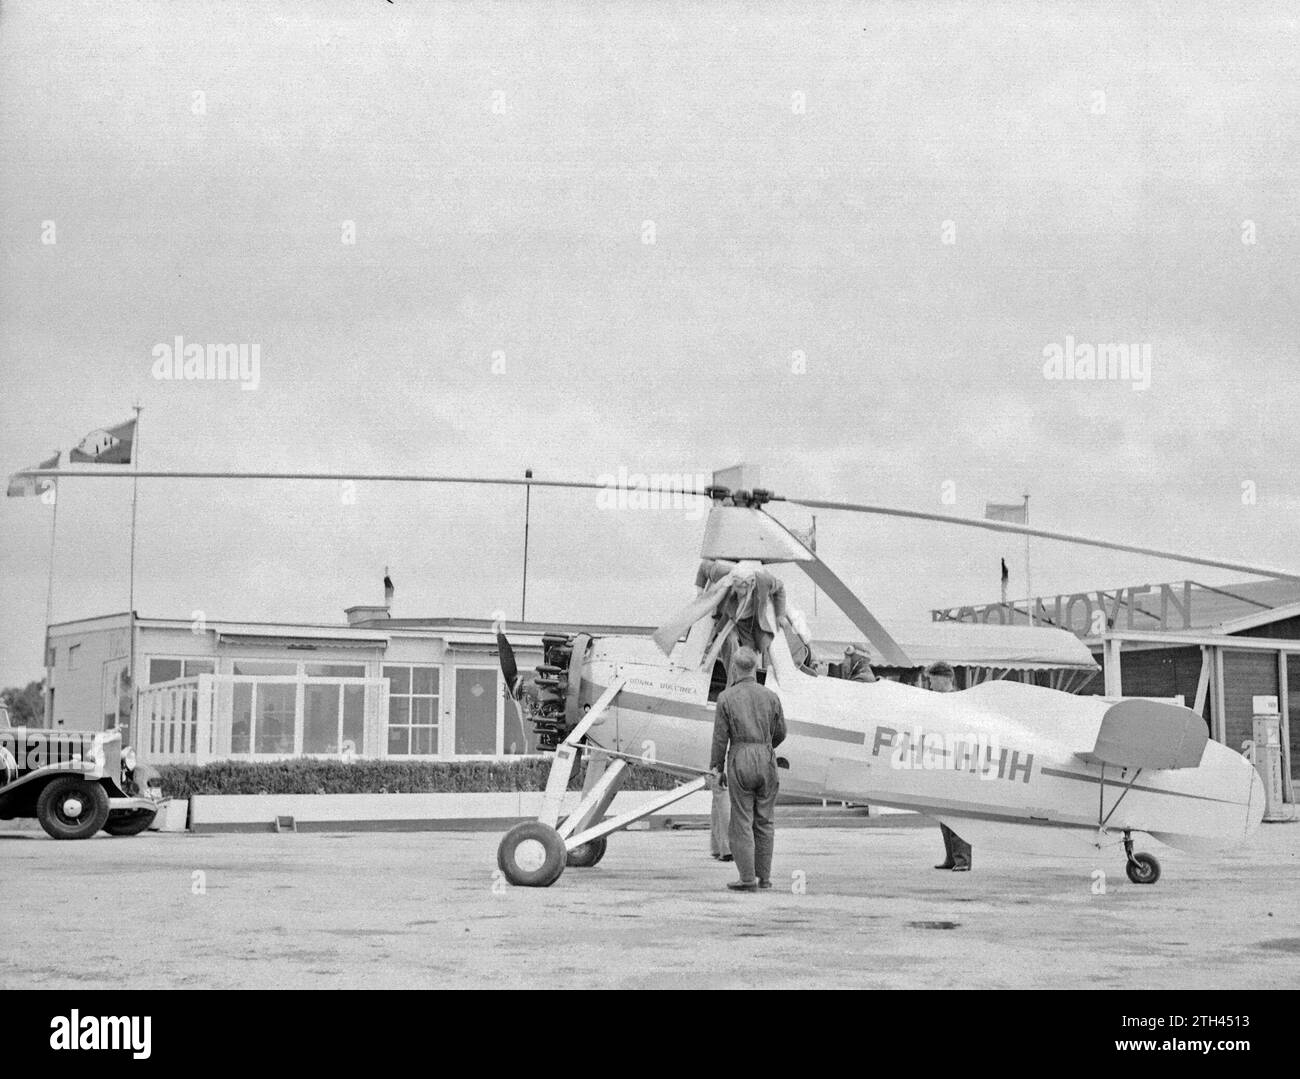 Die Cierva autogiro PH-HHH (Donna Dulcinea) der Niederlande Aviation School in Rotterdam Waalhaven ist startbereit, der Ausbilder nimmt seinen Platz, zwei Mechaniker beobachten ca. 1935 Stockfoto